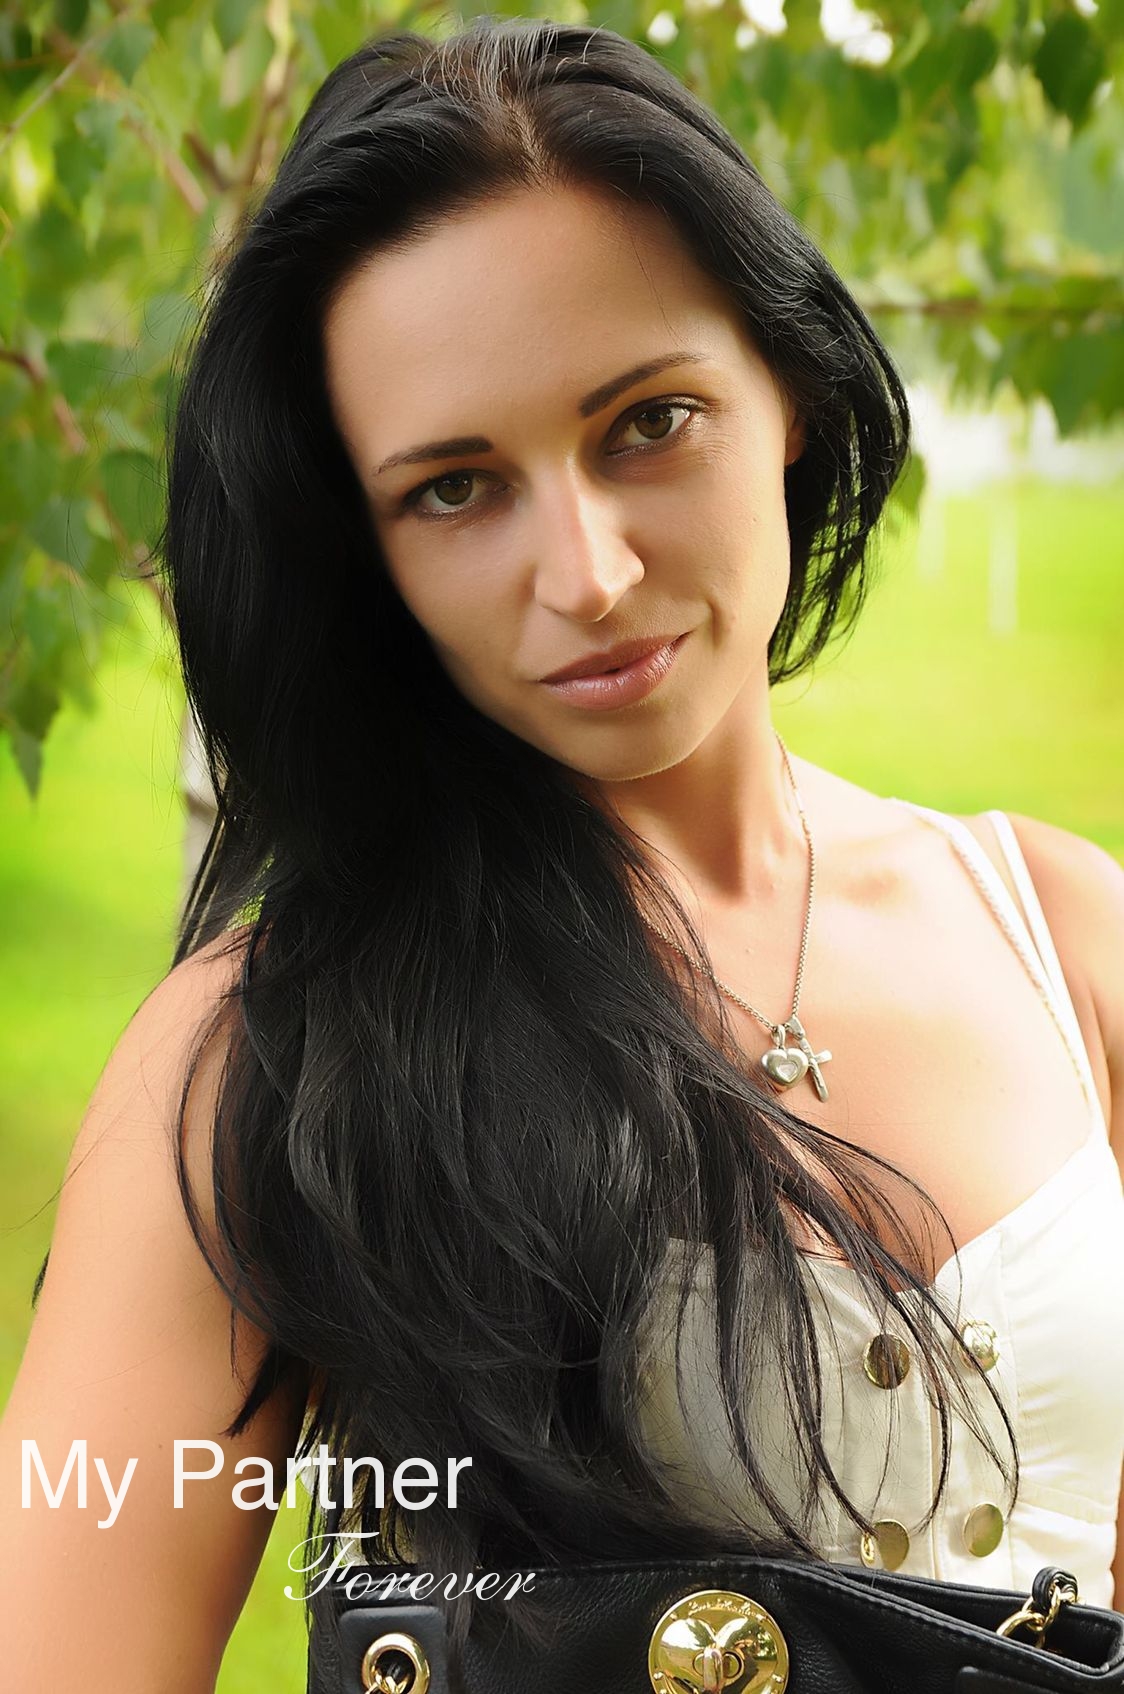 Datingsite to Meet Charming Ukrainian Girl Elena from Vinnitsa, Ukraine